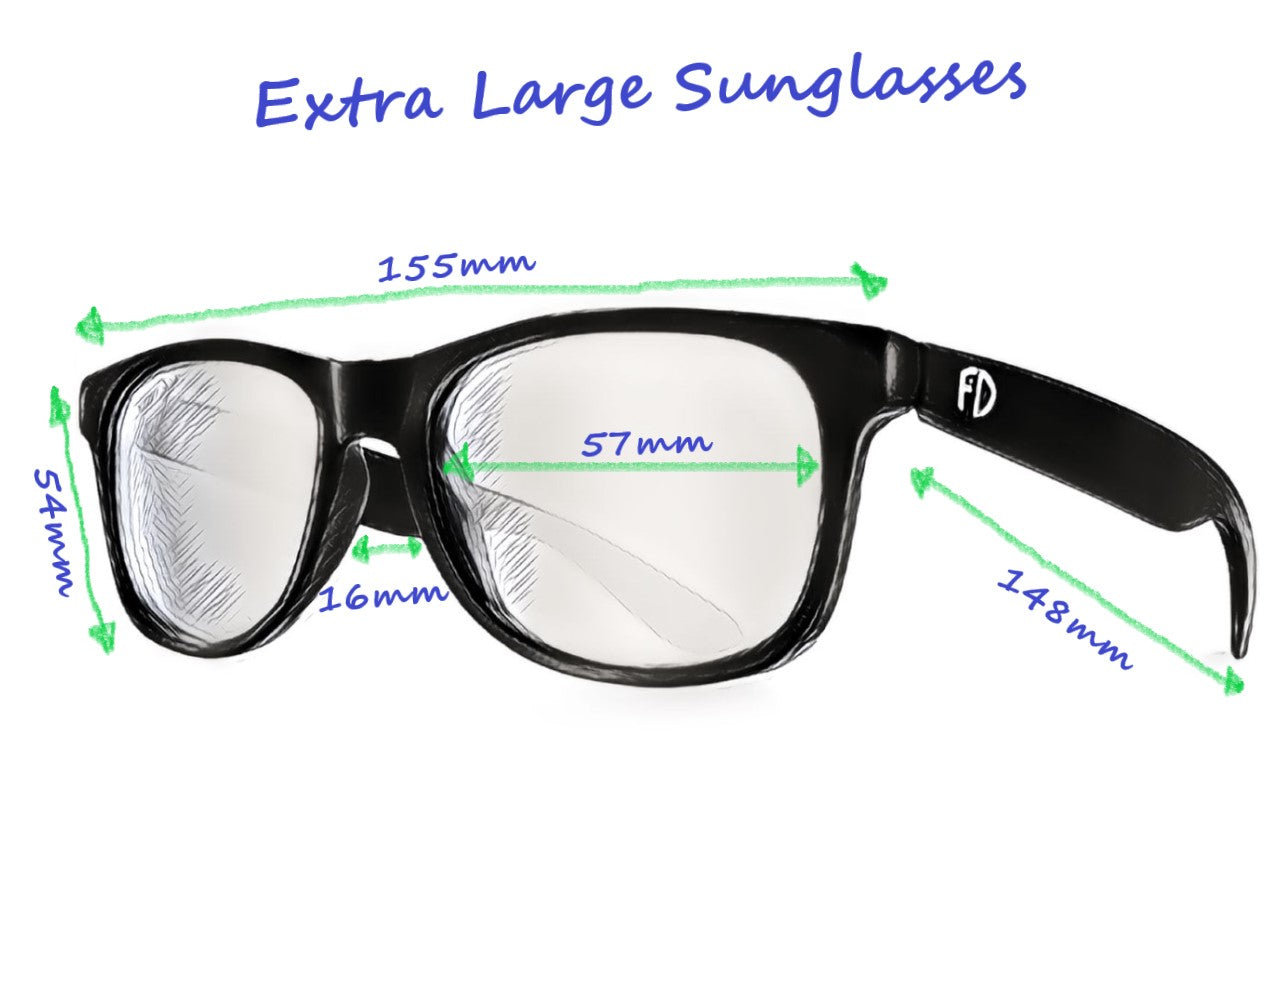 Home - ClearDekho - Eyeglasses, Sunglasses, Contact Lens, Frames